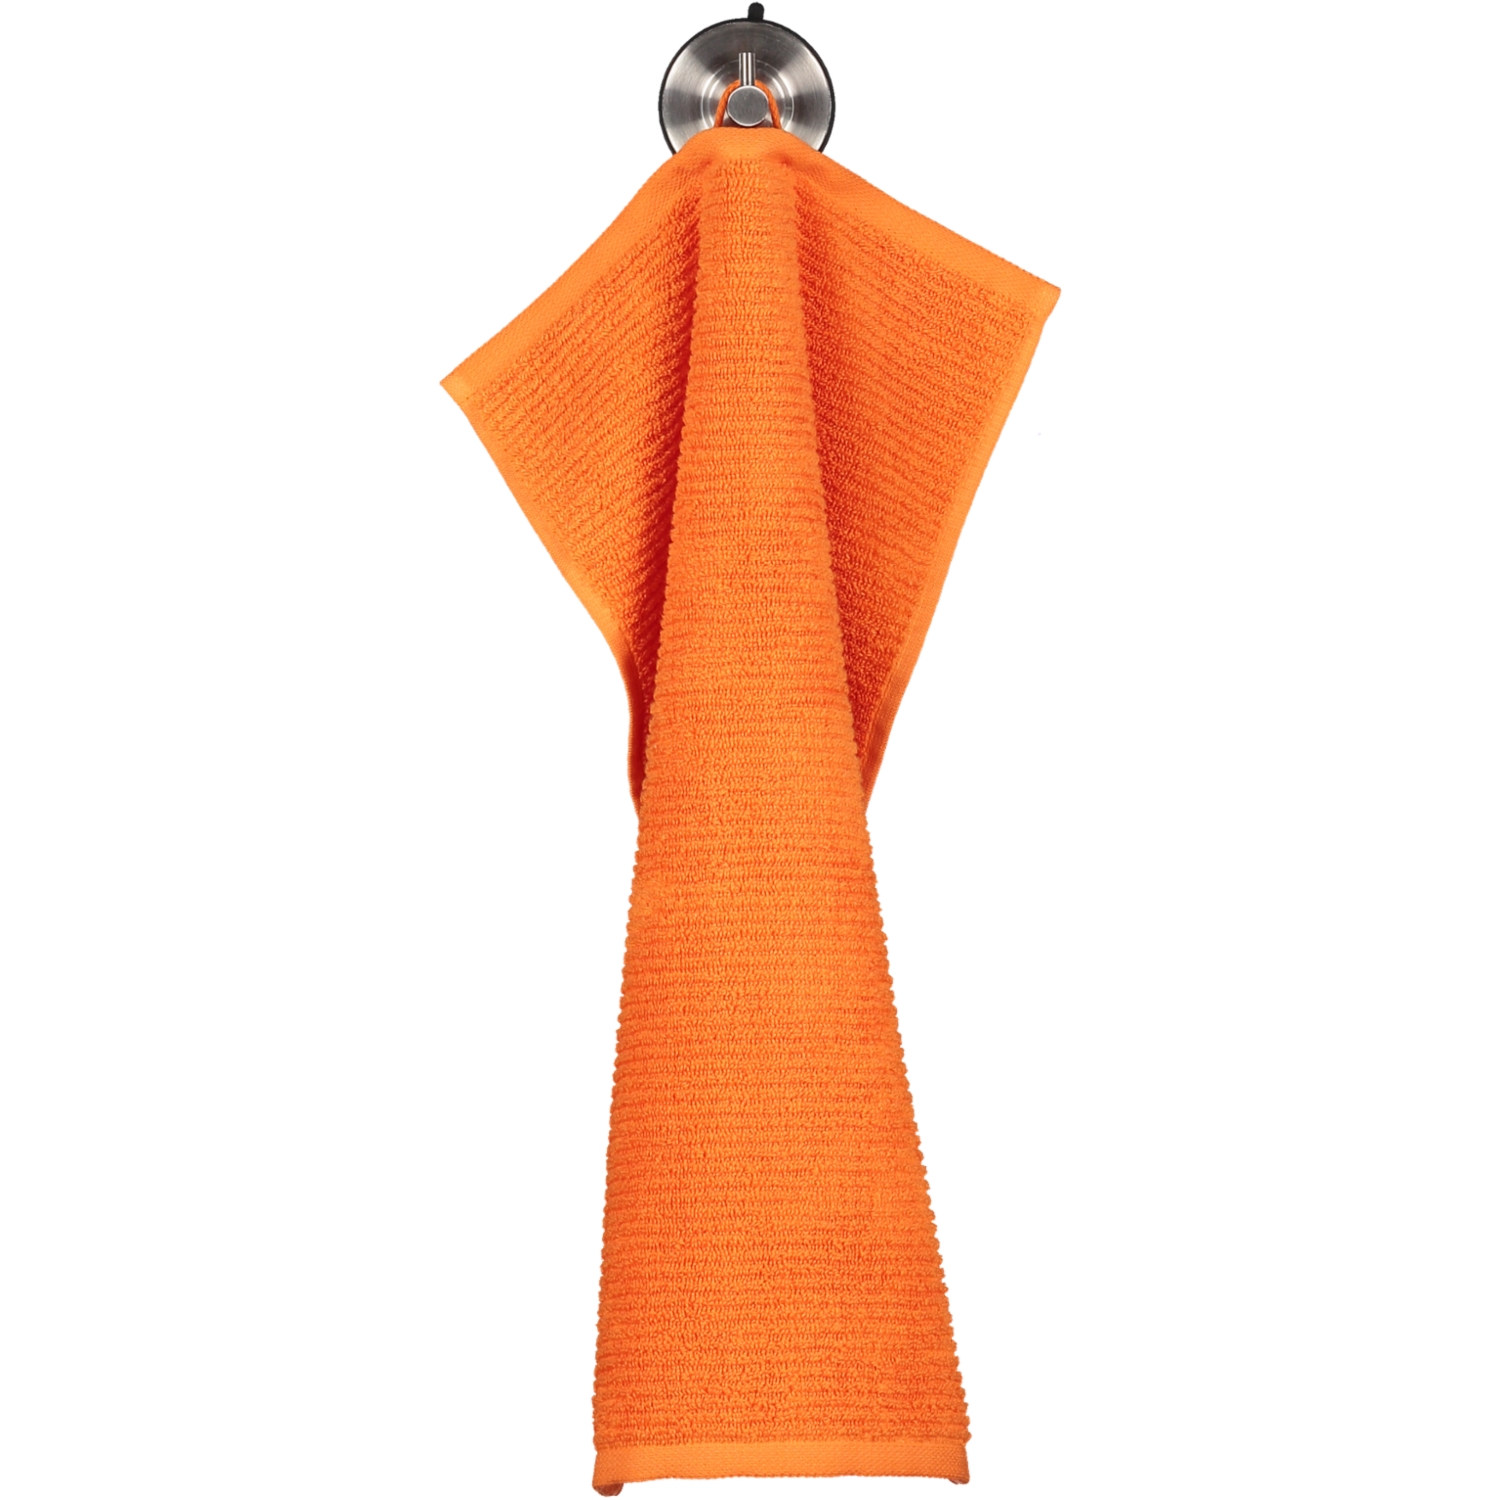 Elements | Möve 106 - Handtücher - orange Farbe: Möve Marken | Möve | Uni